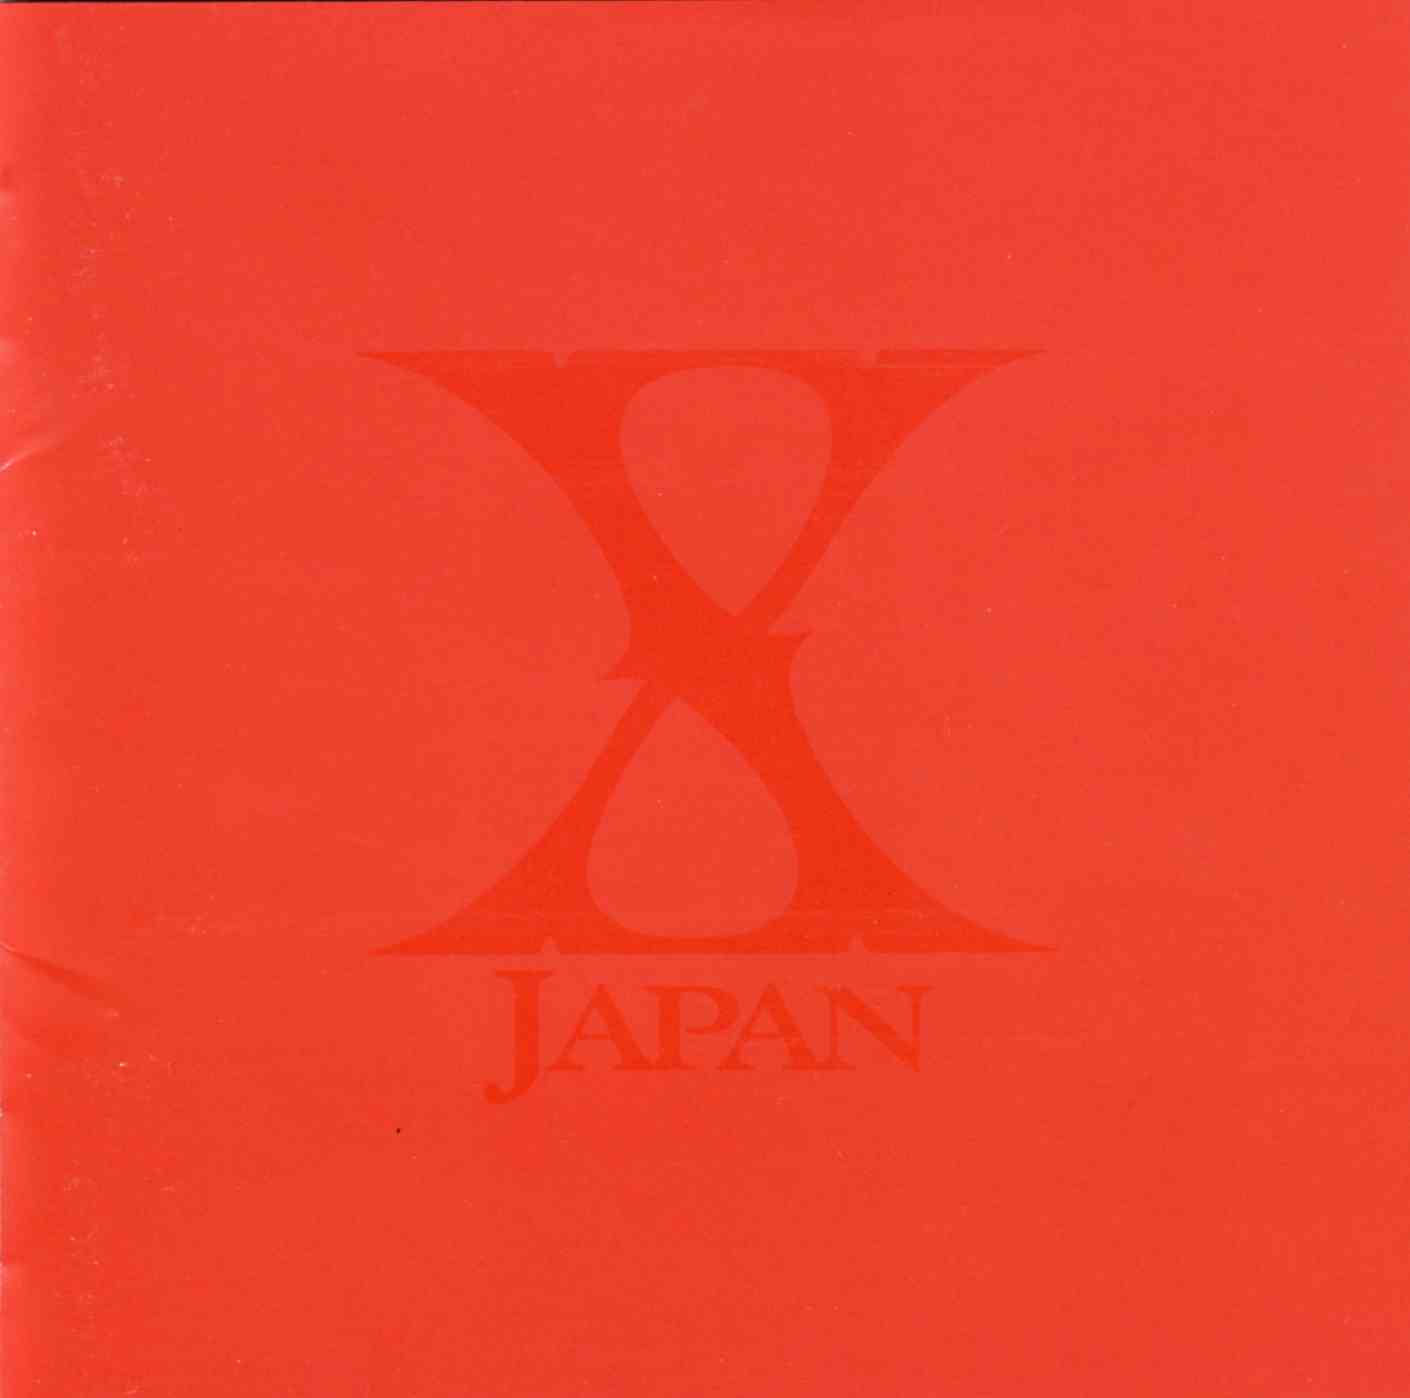 Singles ~Atlantic Years~ | X Japan Wiki | Fandom